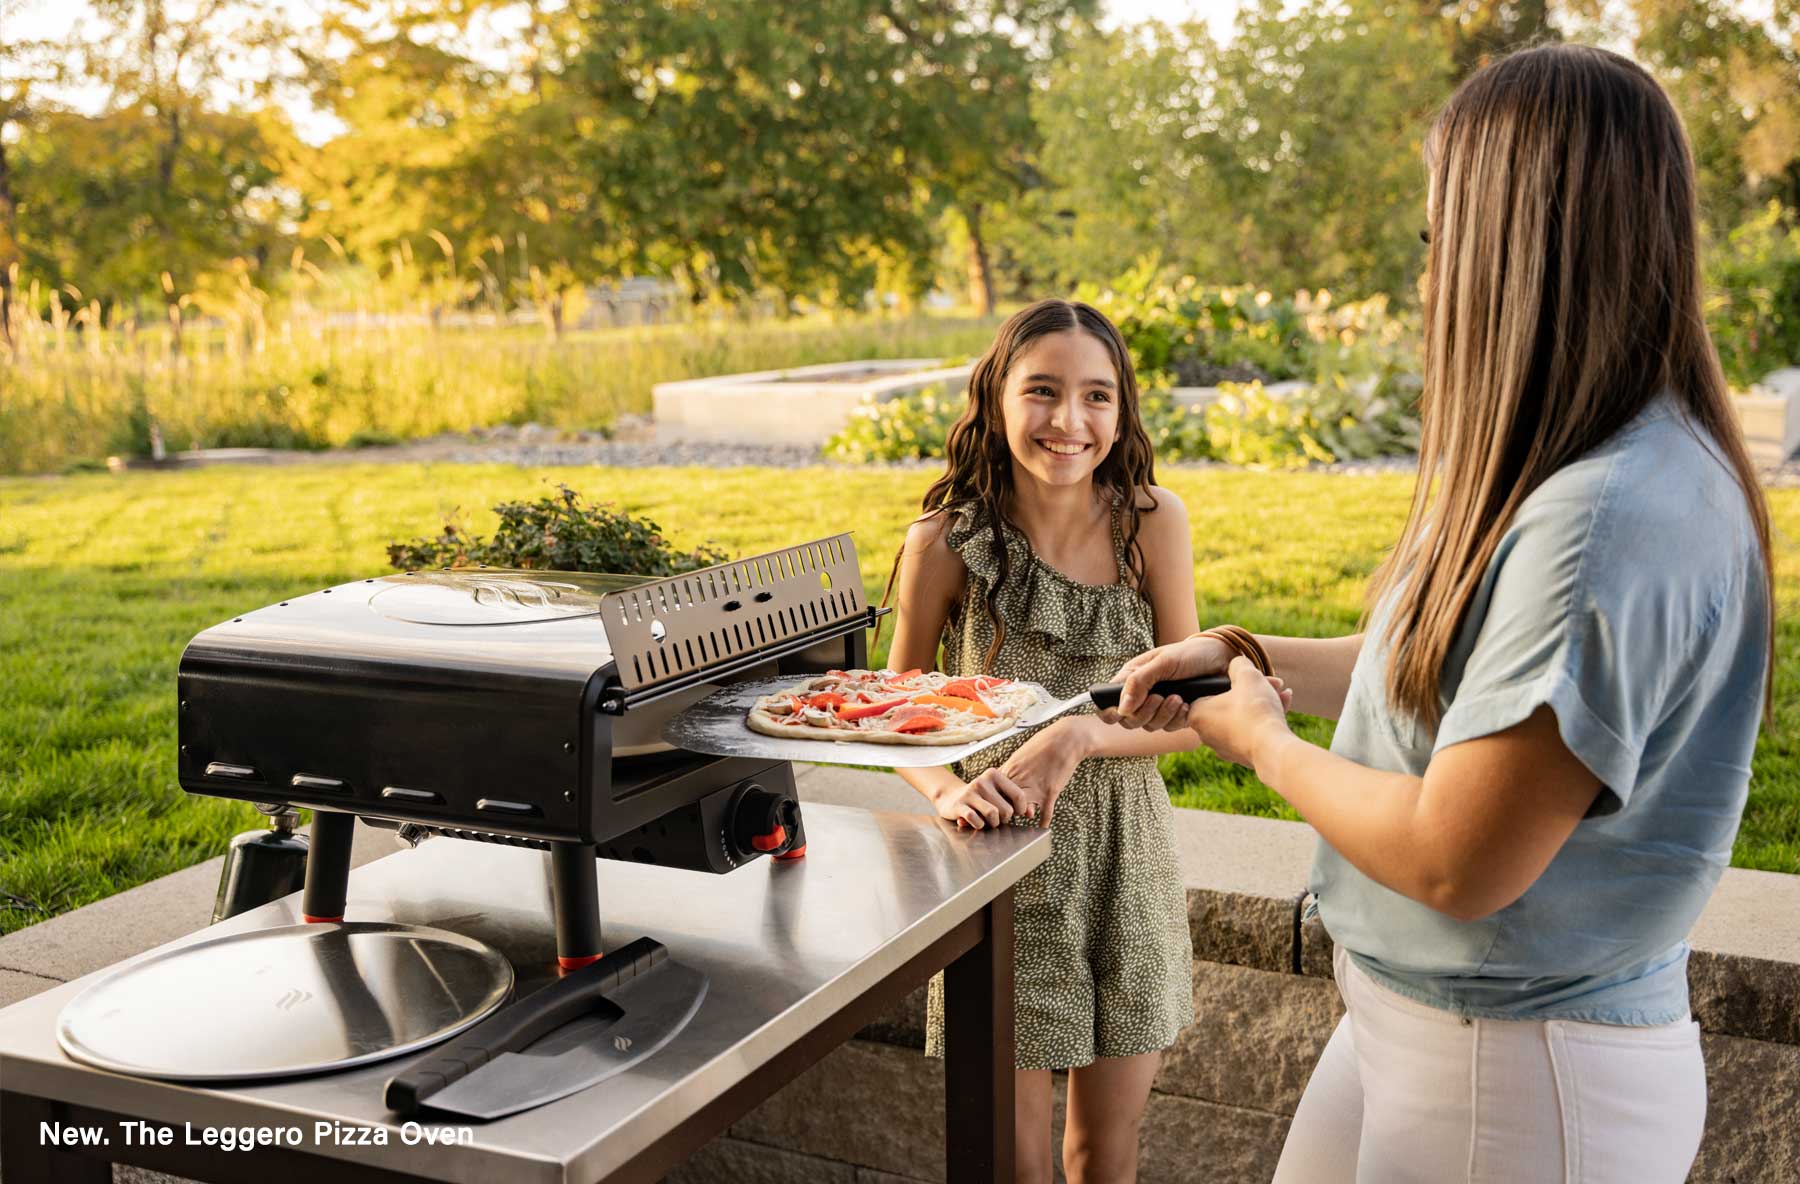 Blackstone Releases Leggero Pizza Oven - More Portable and Cheaper